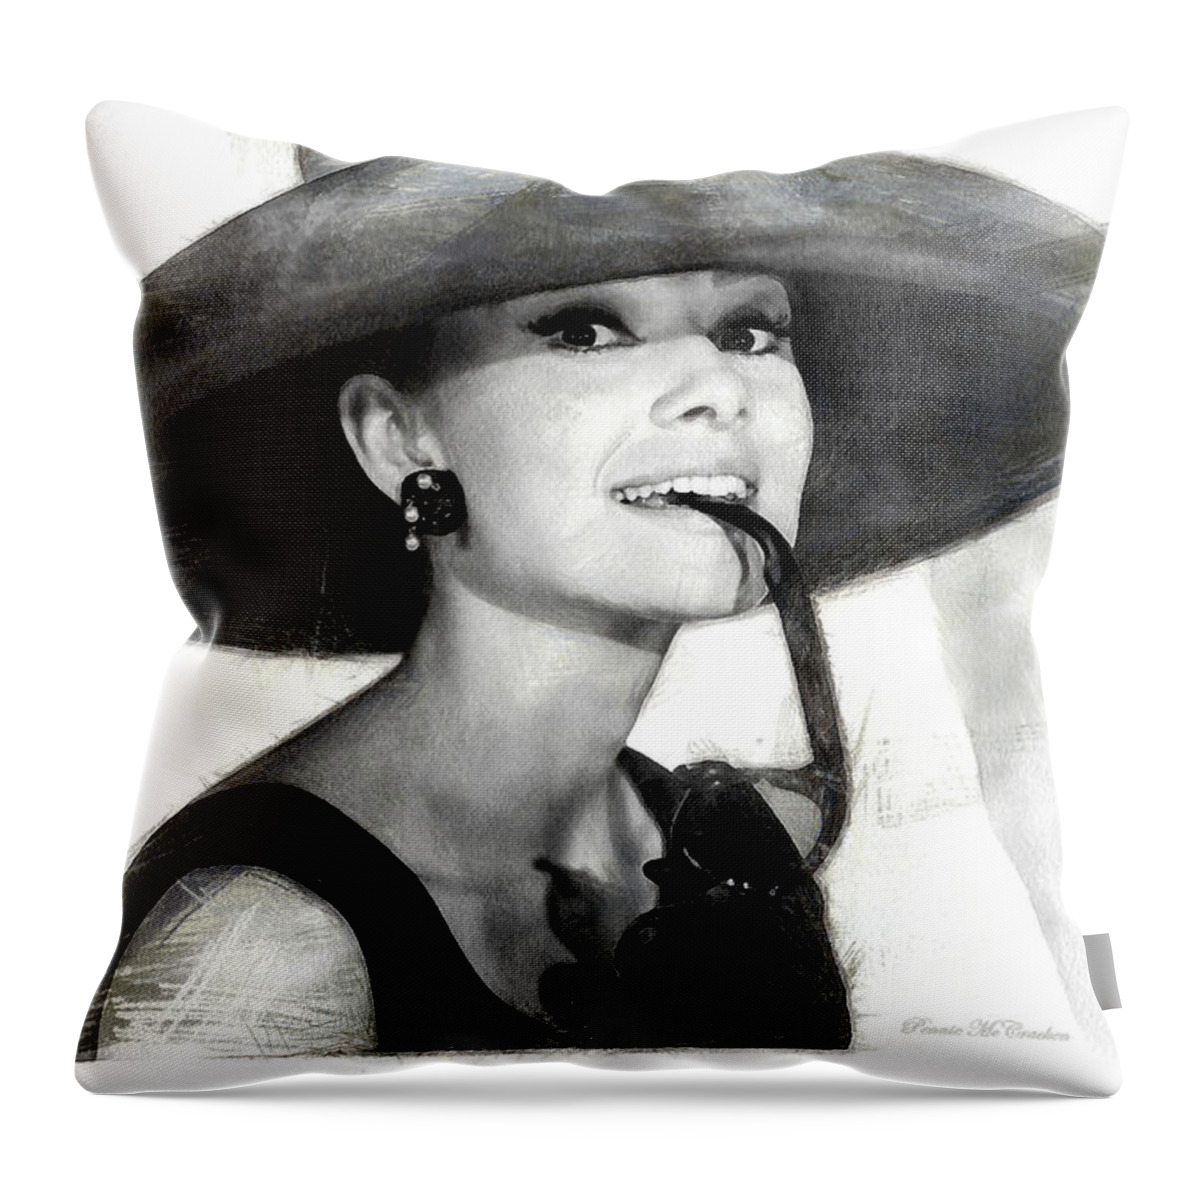 Actress Throw Pillow featuring the digital art Audrey Hepburn 2 by Pennie McCracken